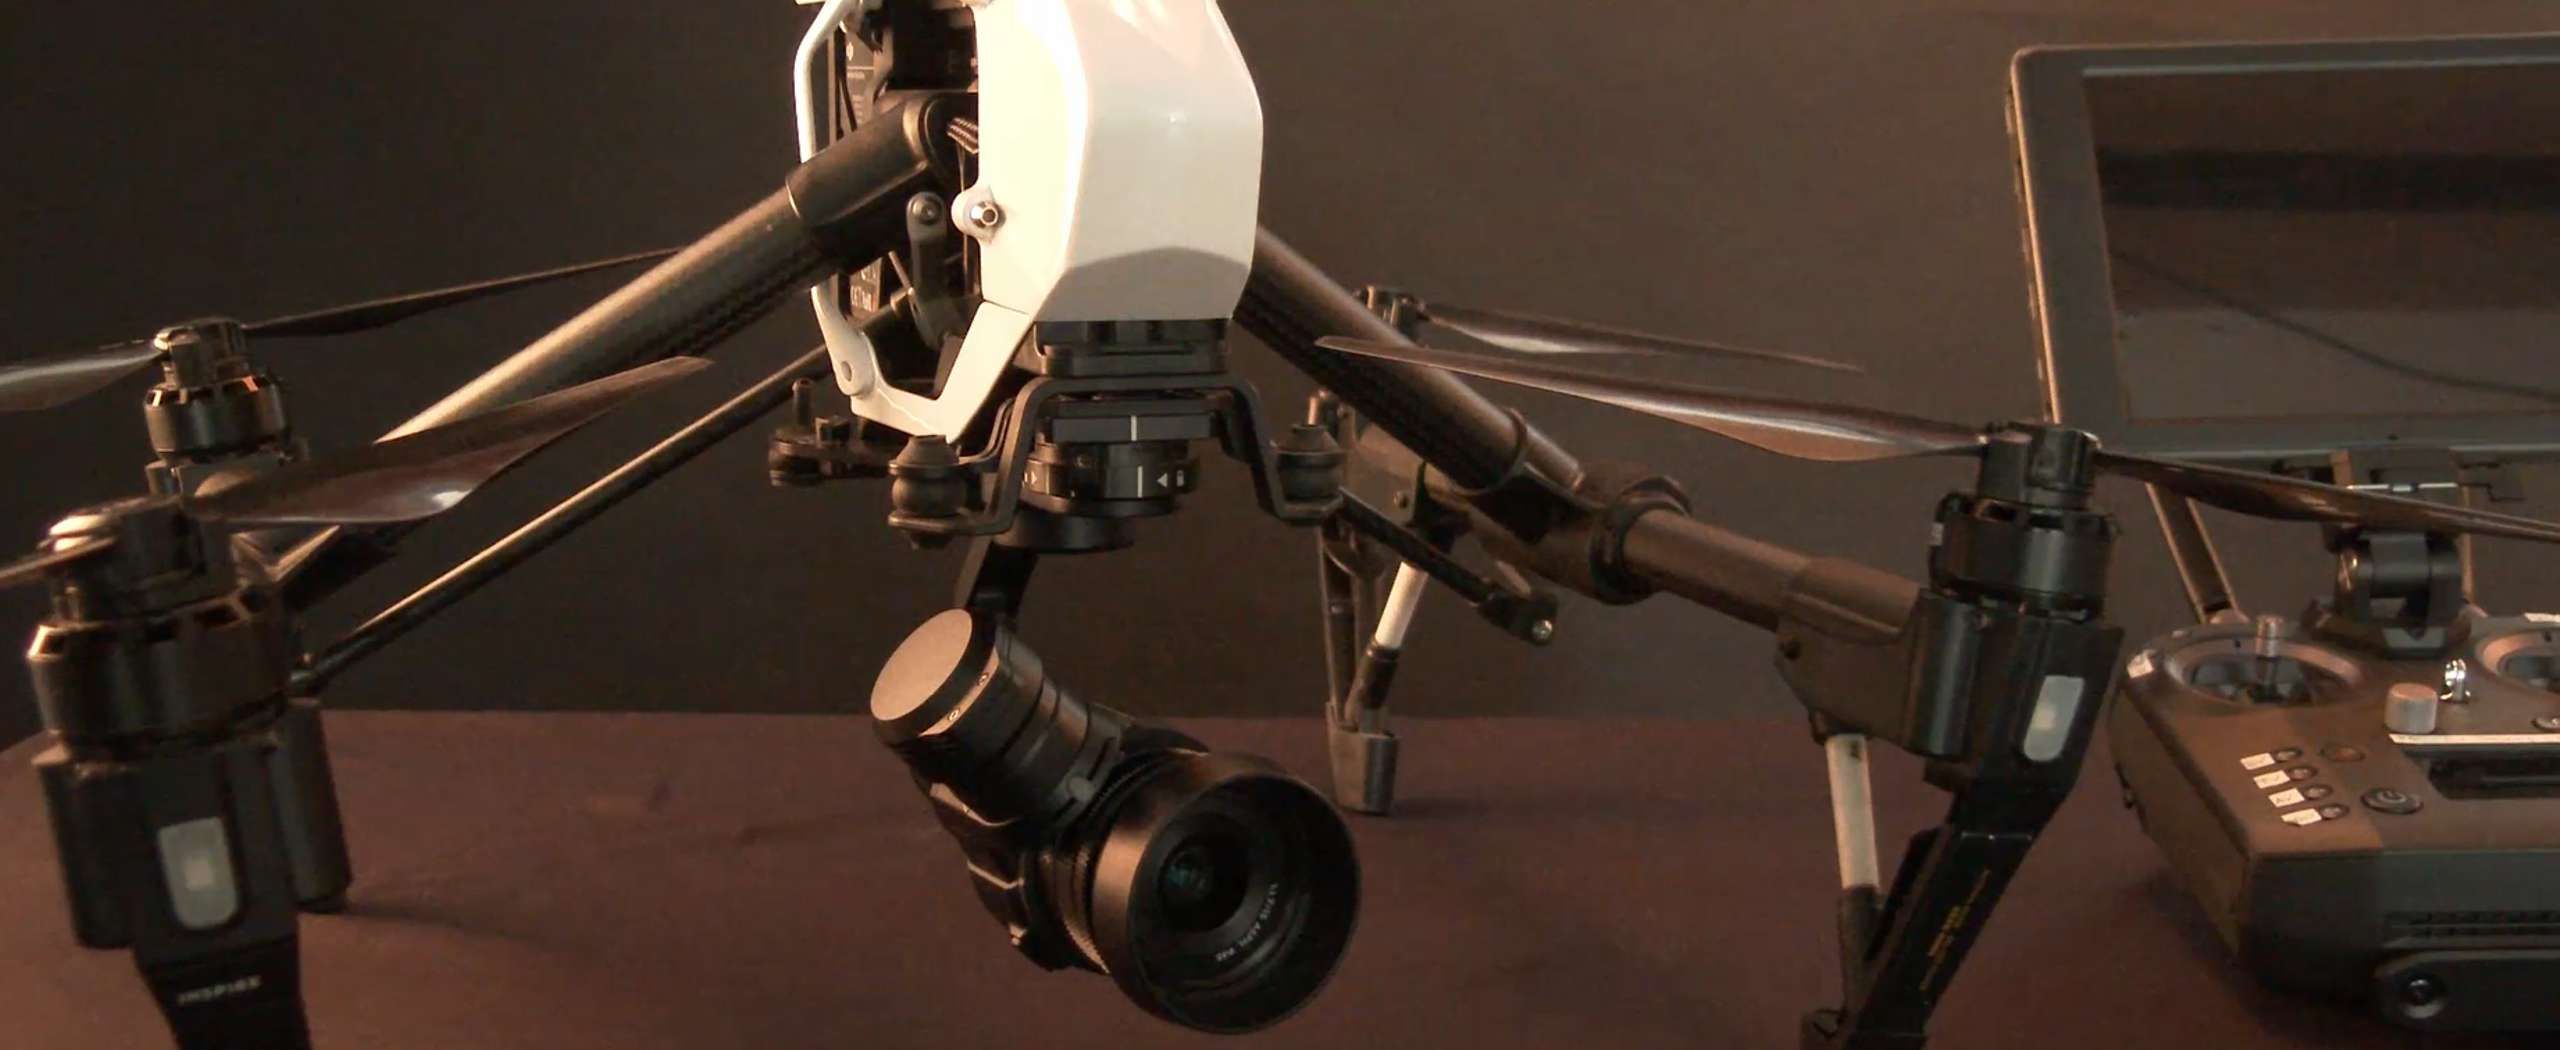 Ispezioni con drone Belluno - Flotta droni 